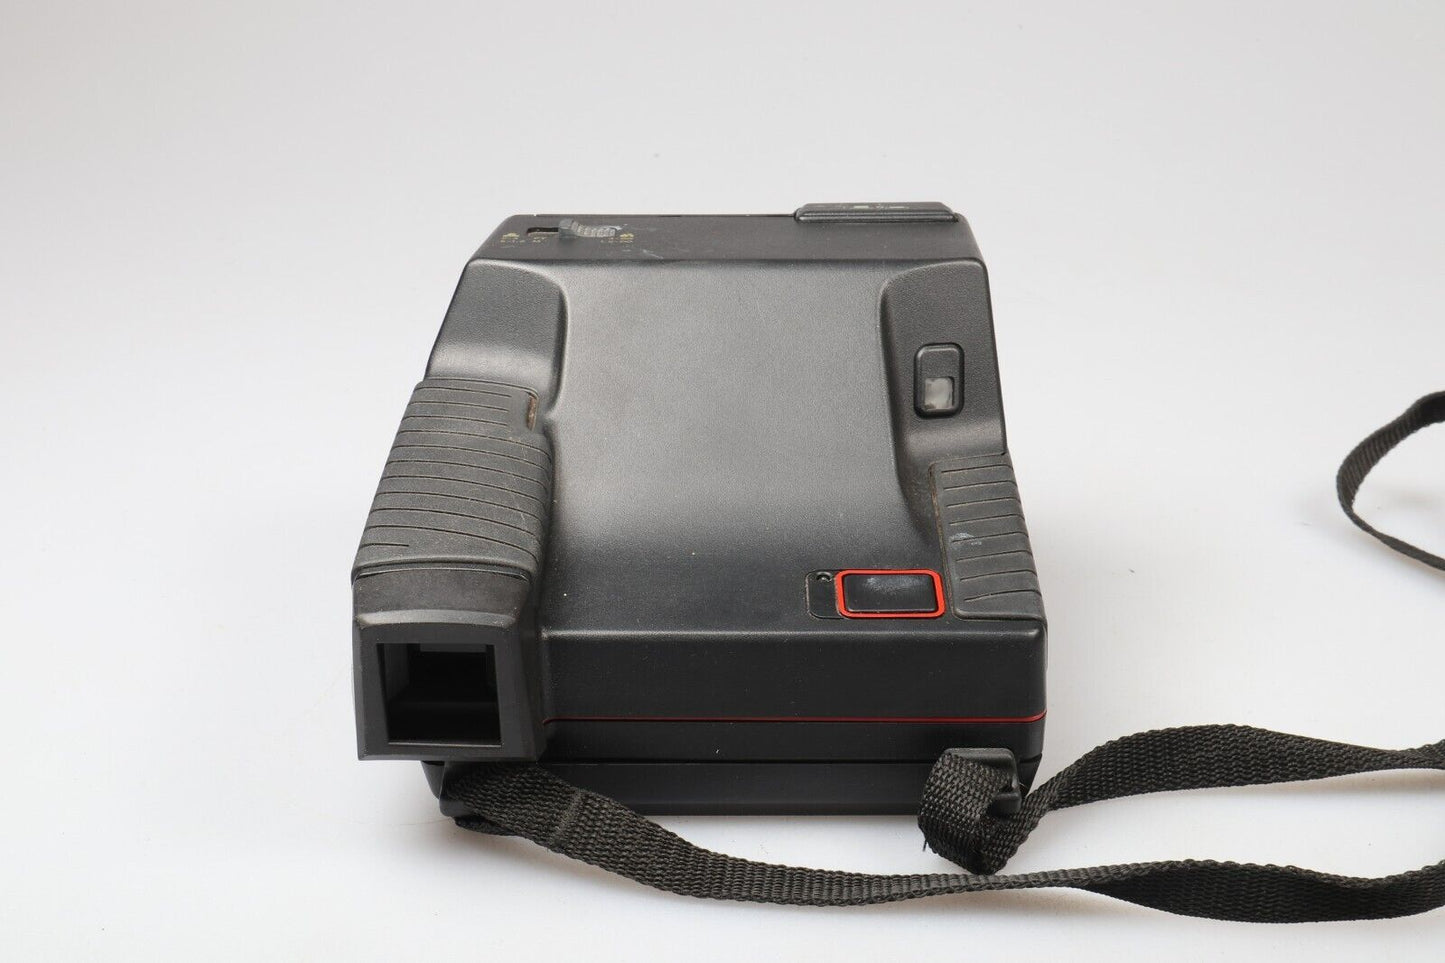 Polaroid Impulse Portrait | Instant Film Camera | 600 Film | Black